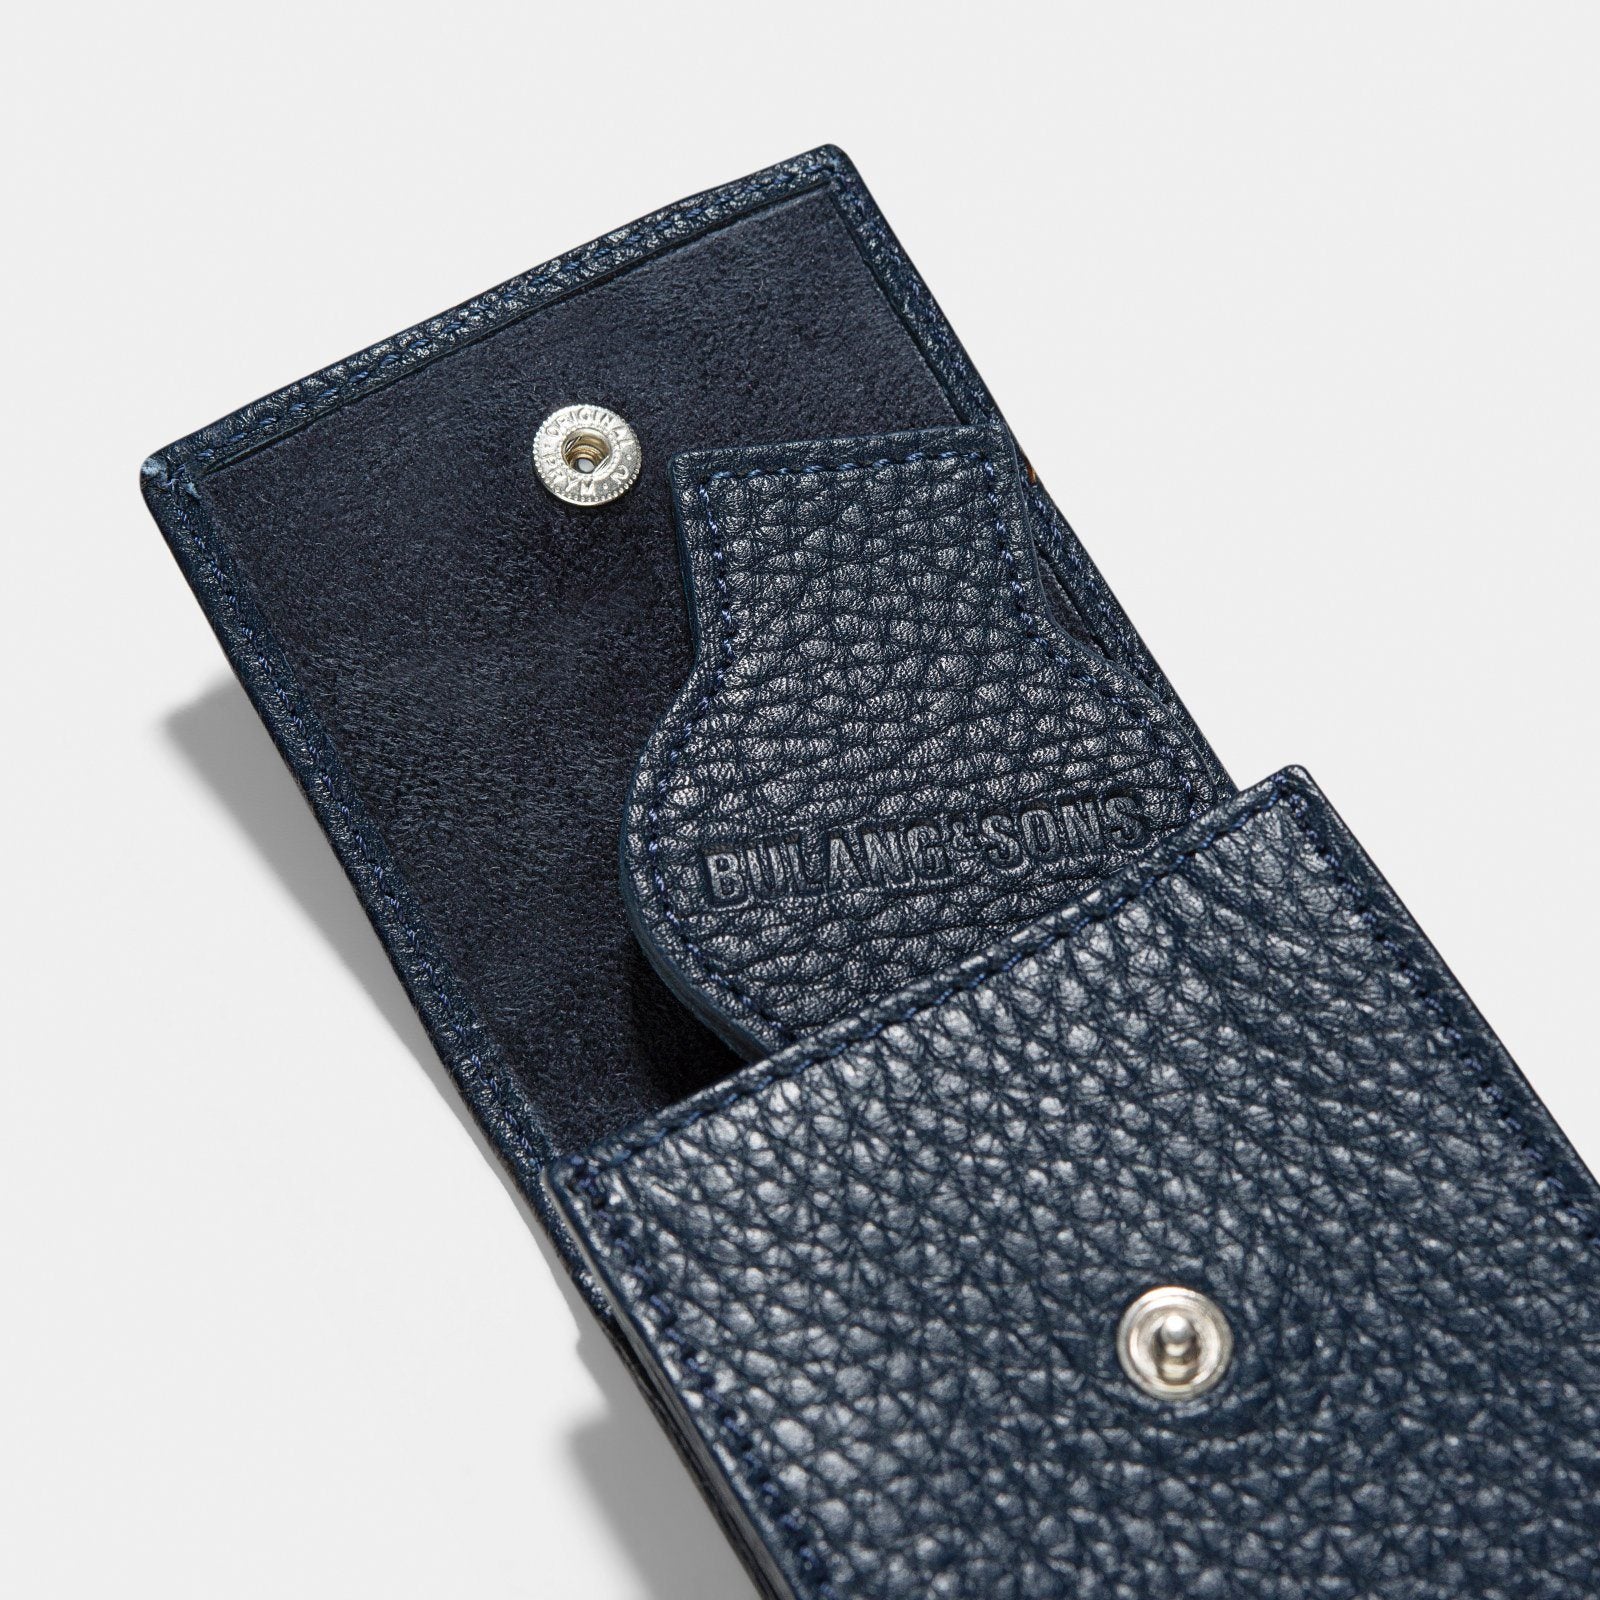 NEW Joy & Iman Brown Leather Shoulder Bag Pocket Watch Purse Satchel | eBay